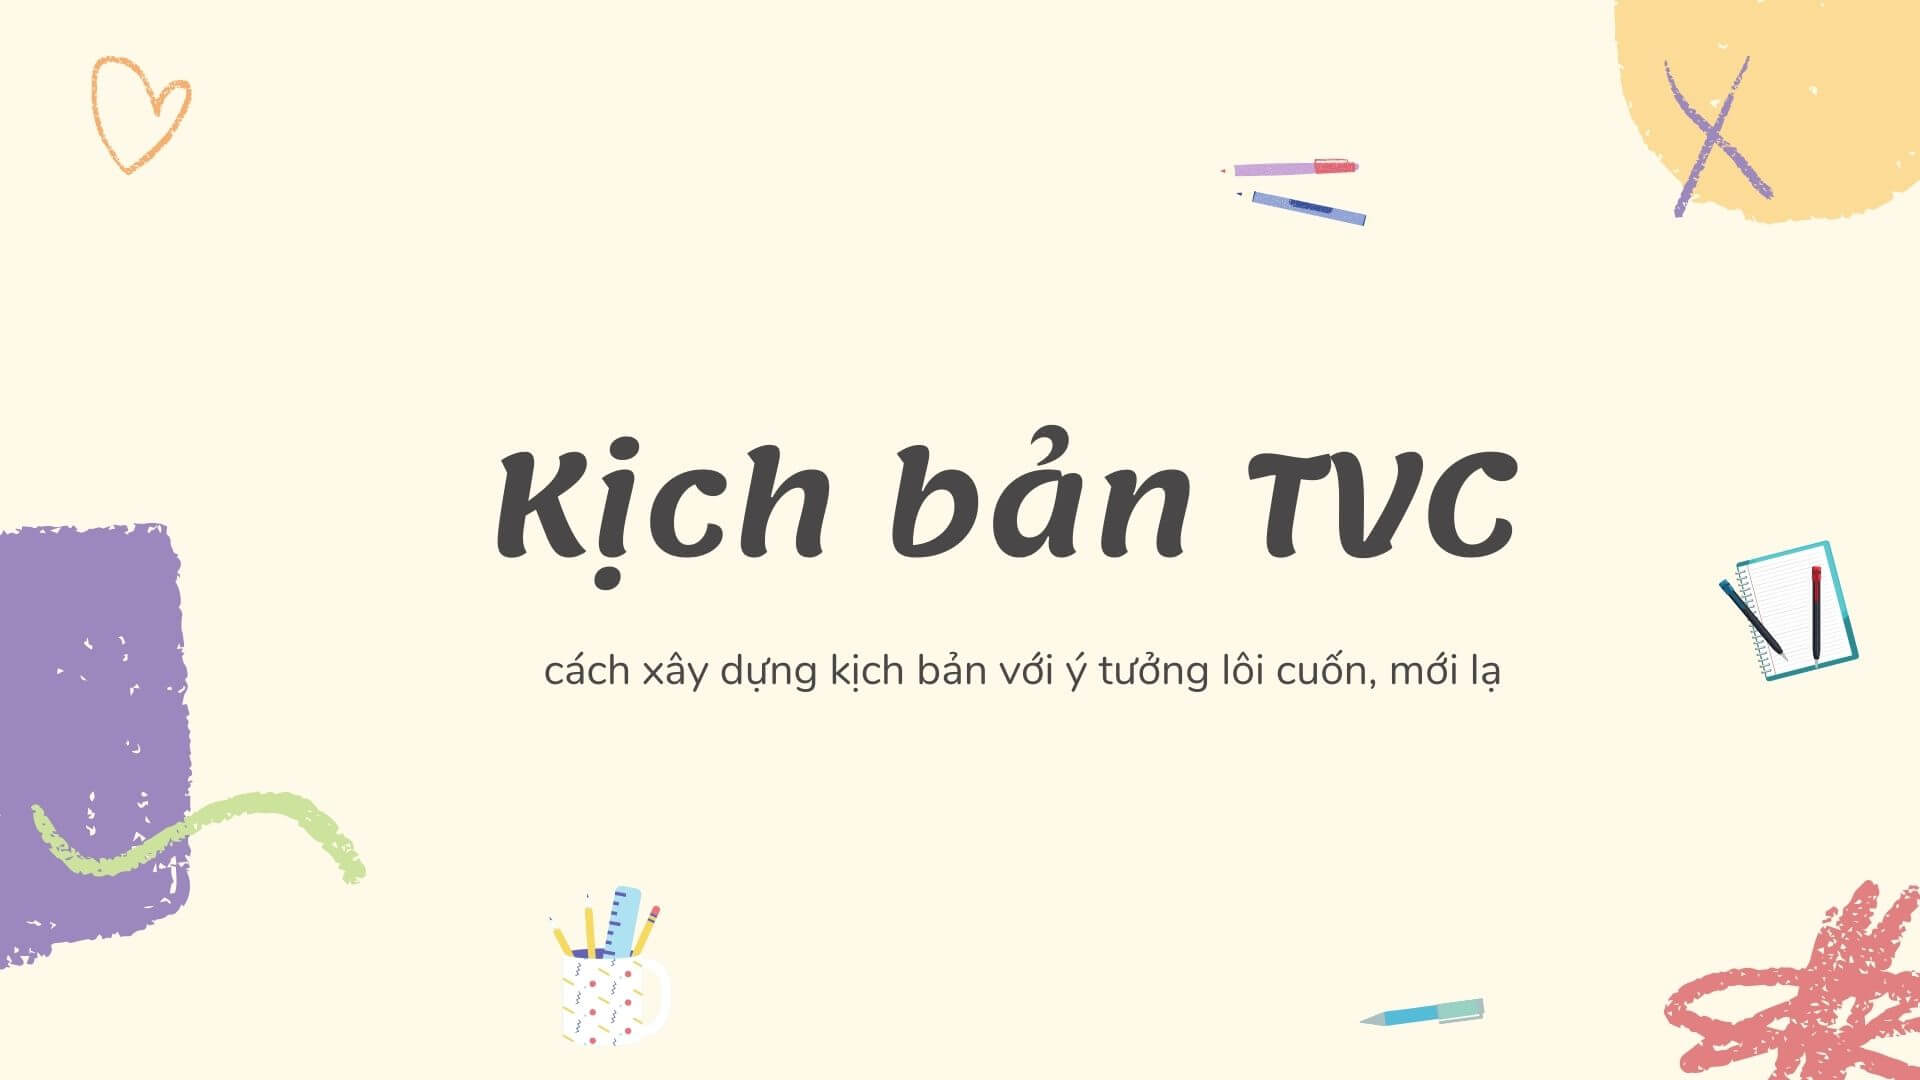 [HOT] Download mẫu kịch bản TVC  quảng cáo sản phẩm